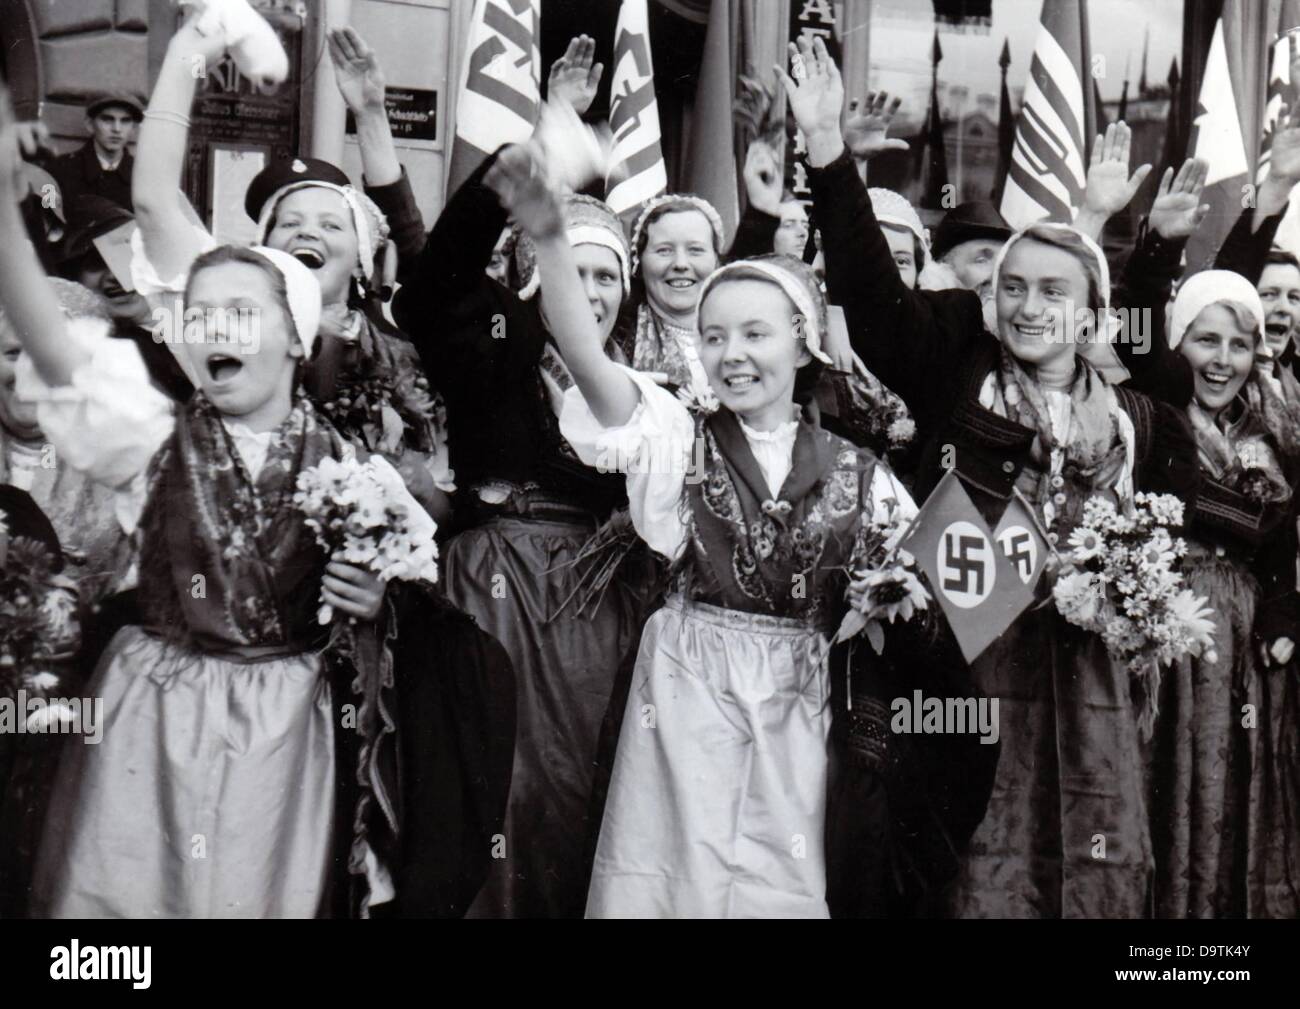 Немцы радуются. Март 1938 аншлюс Австрии. Присоединение Австрии 1938. Аншлюс Судеты 1938.